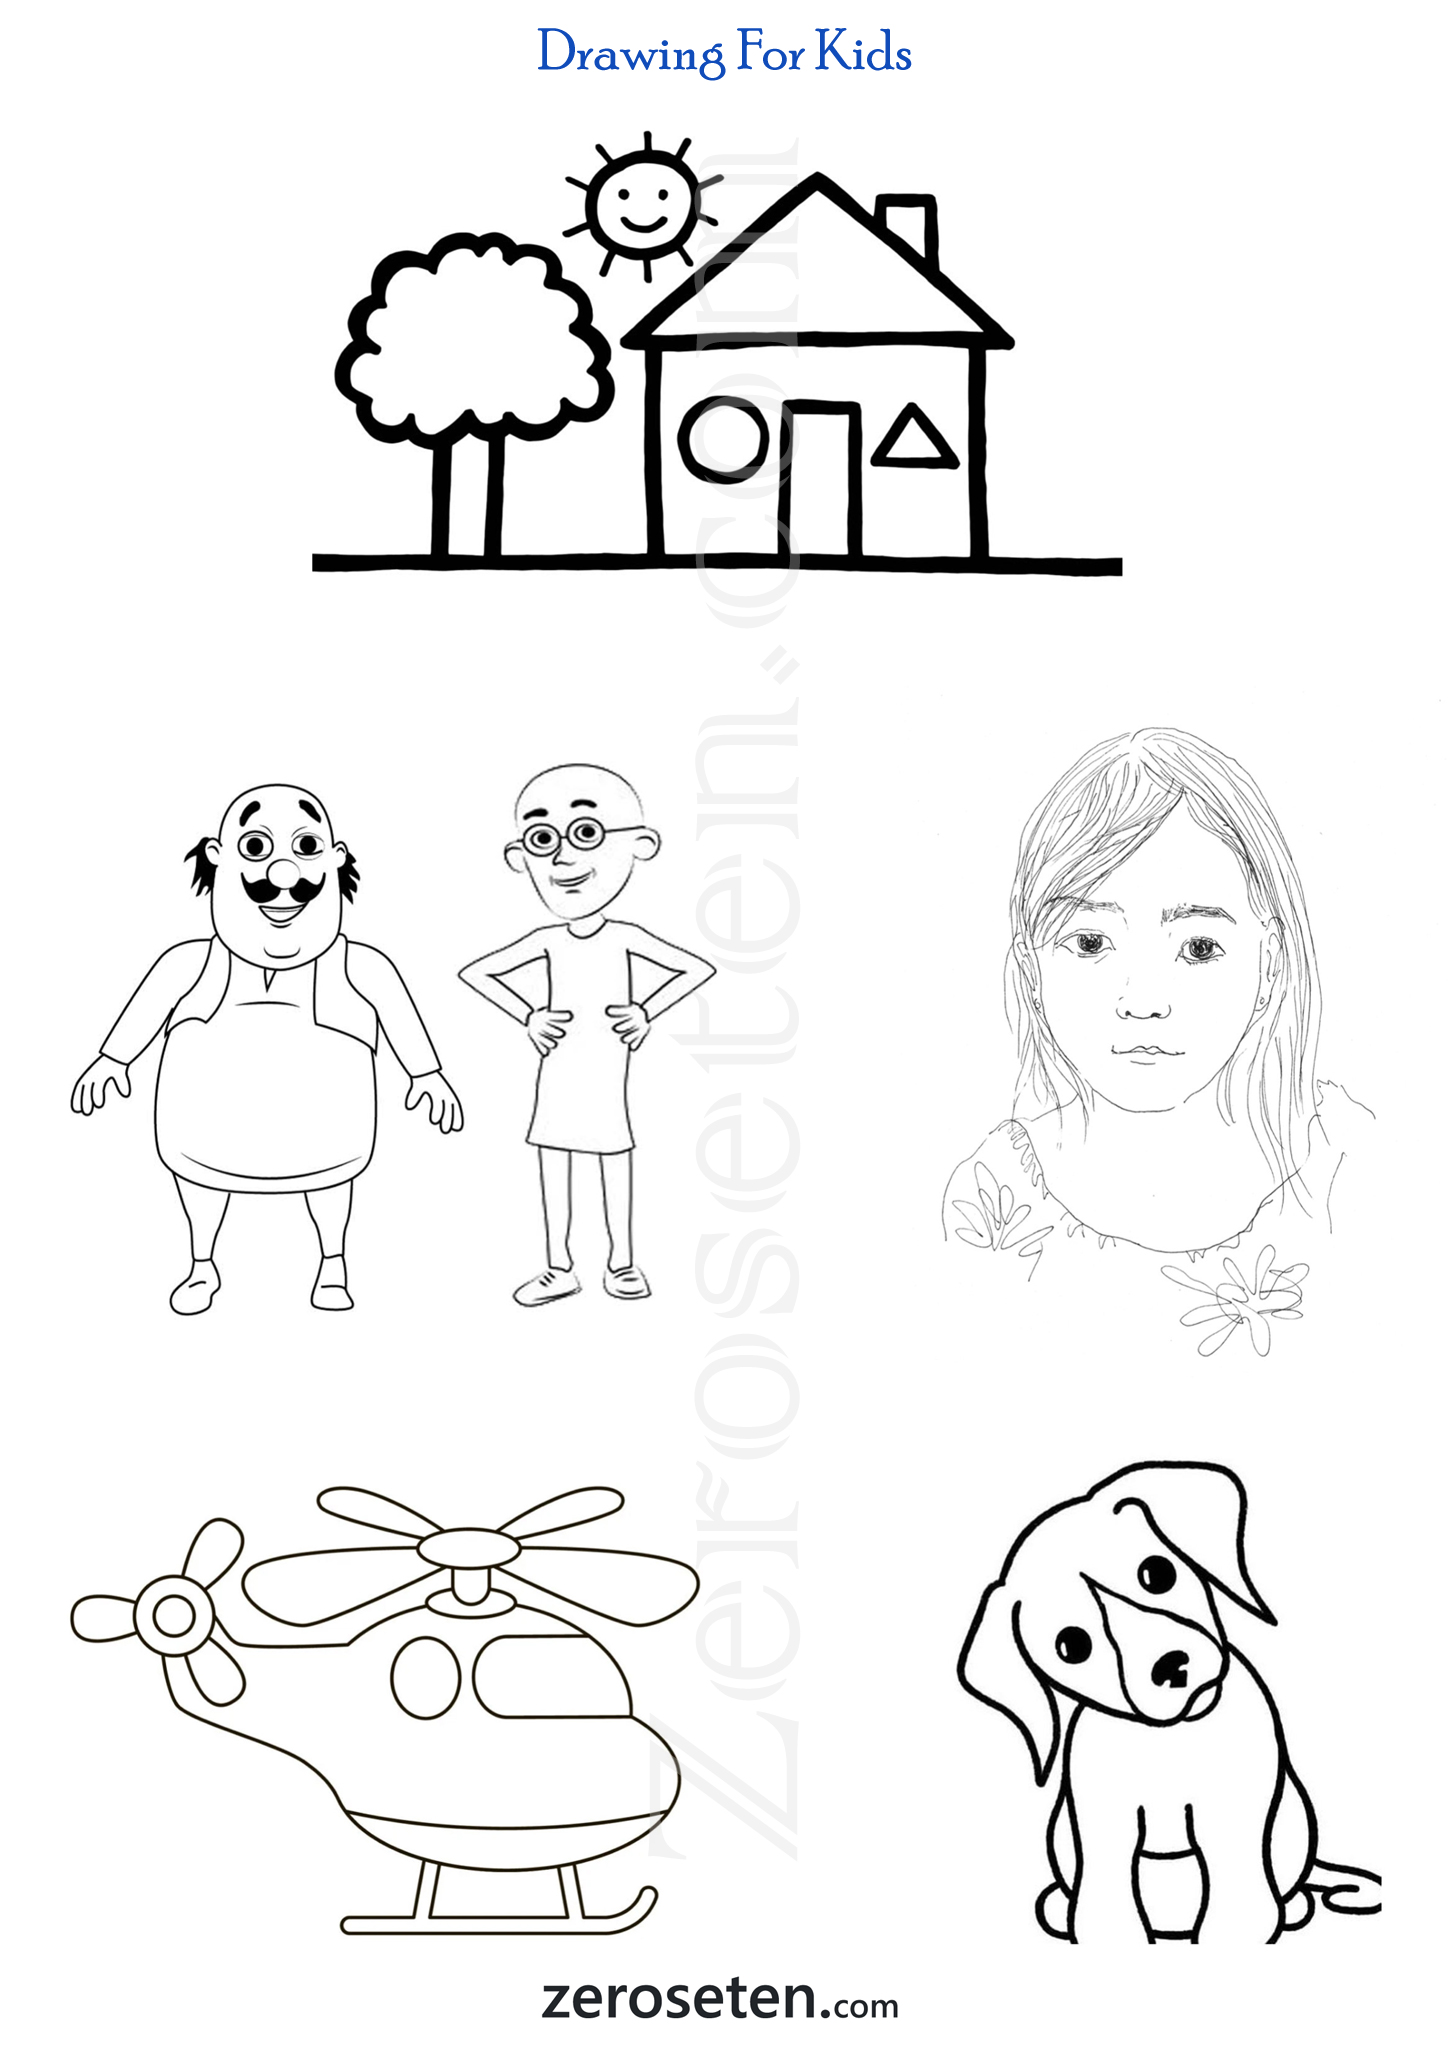 बच्चों के लिए ड्राइंग भालू और रंग पेज # कलाकारी | Menggambar Bear and Co...  | Drawing for kids, Drawings, Kids